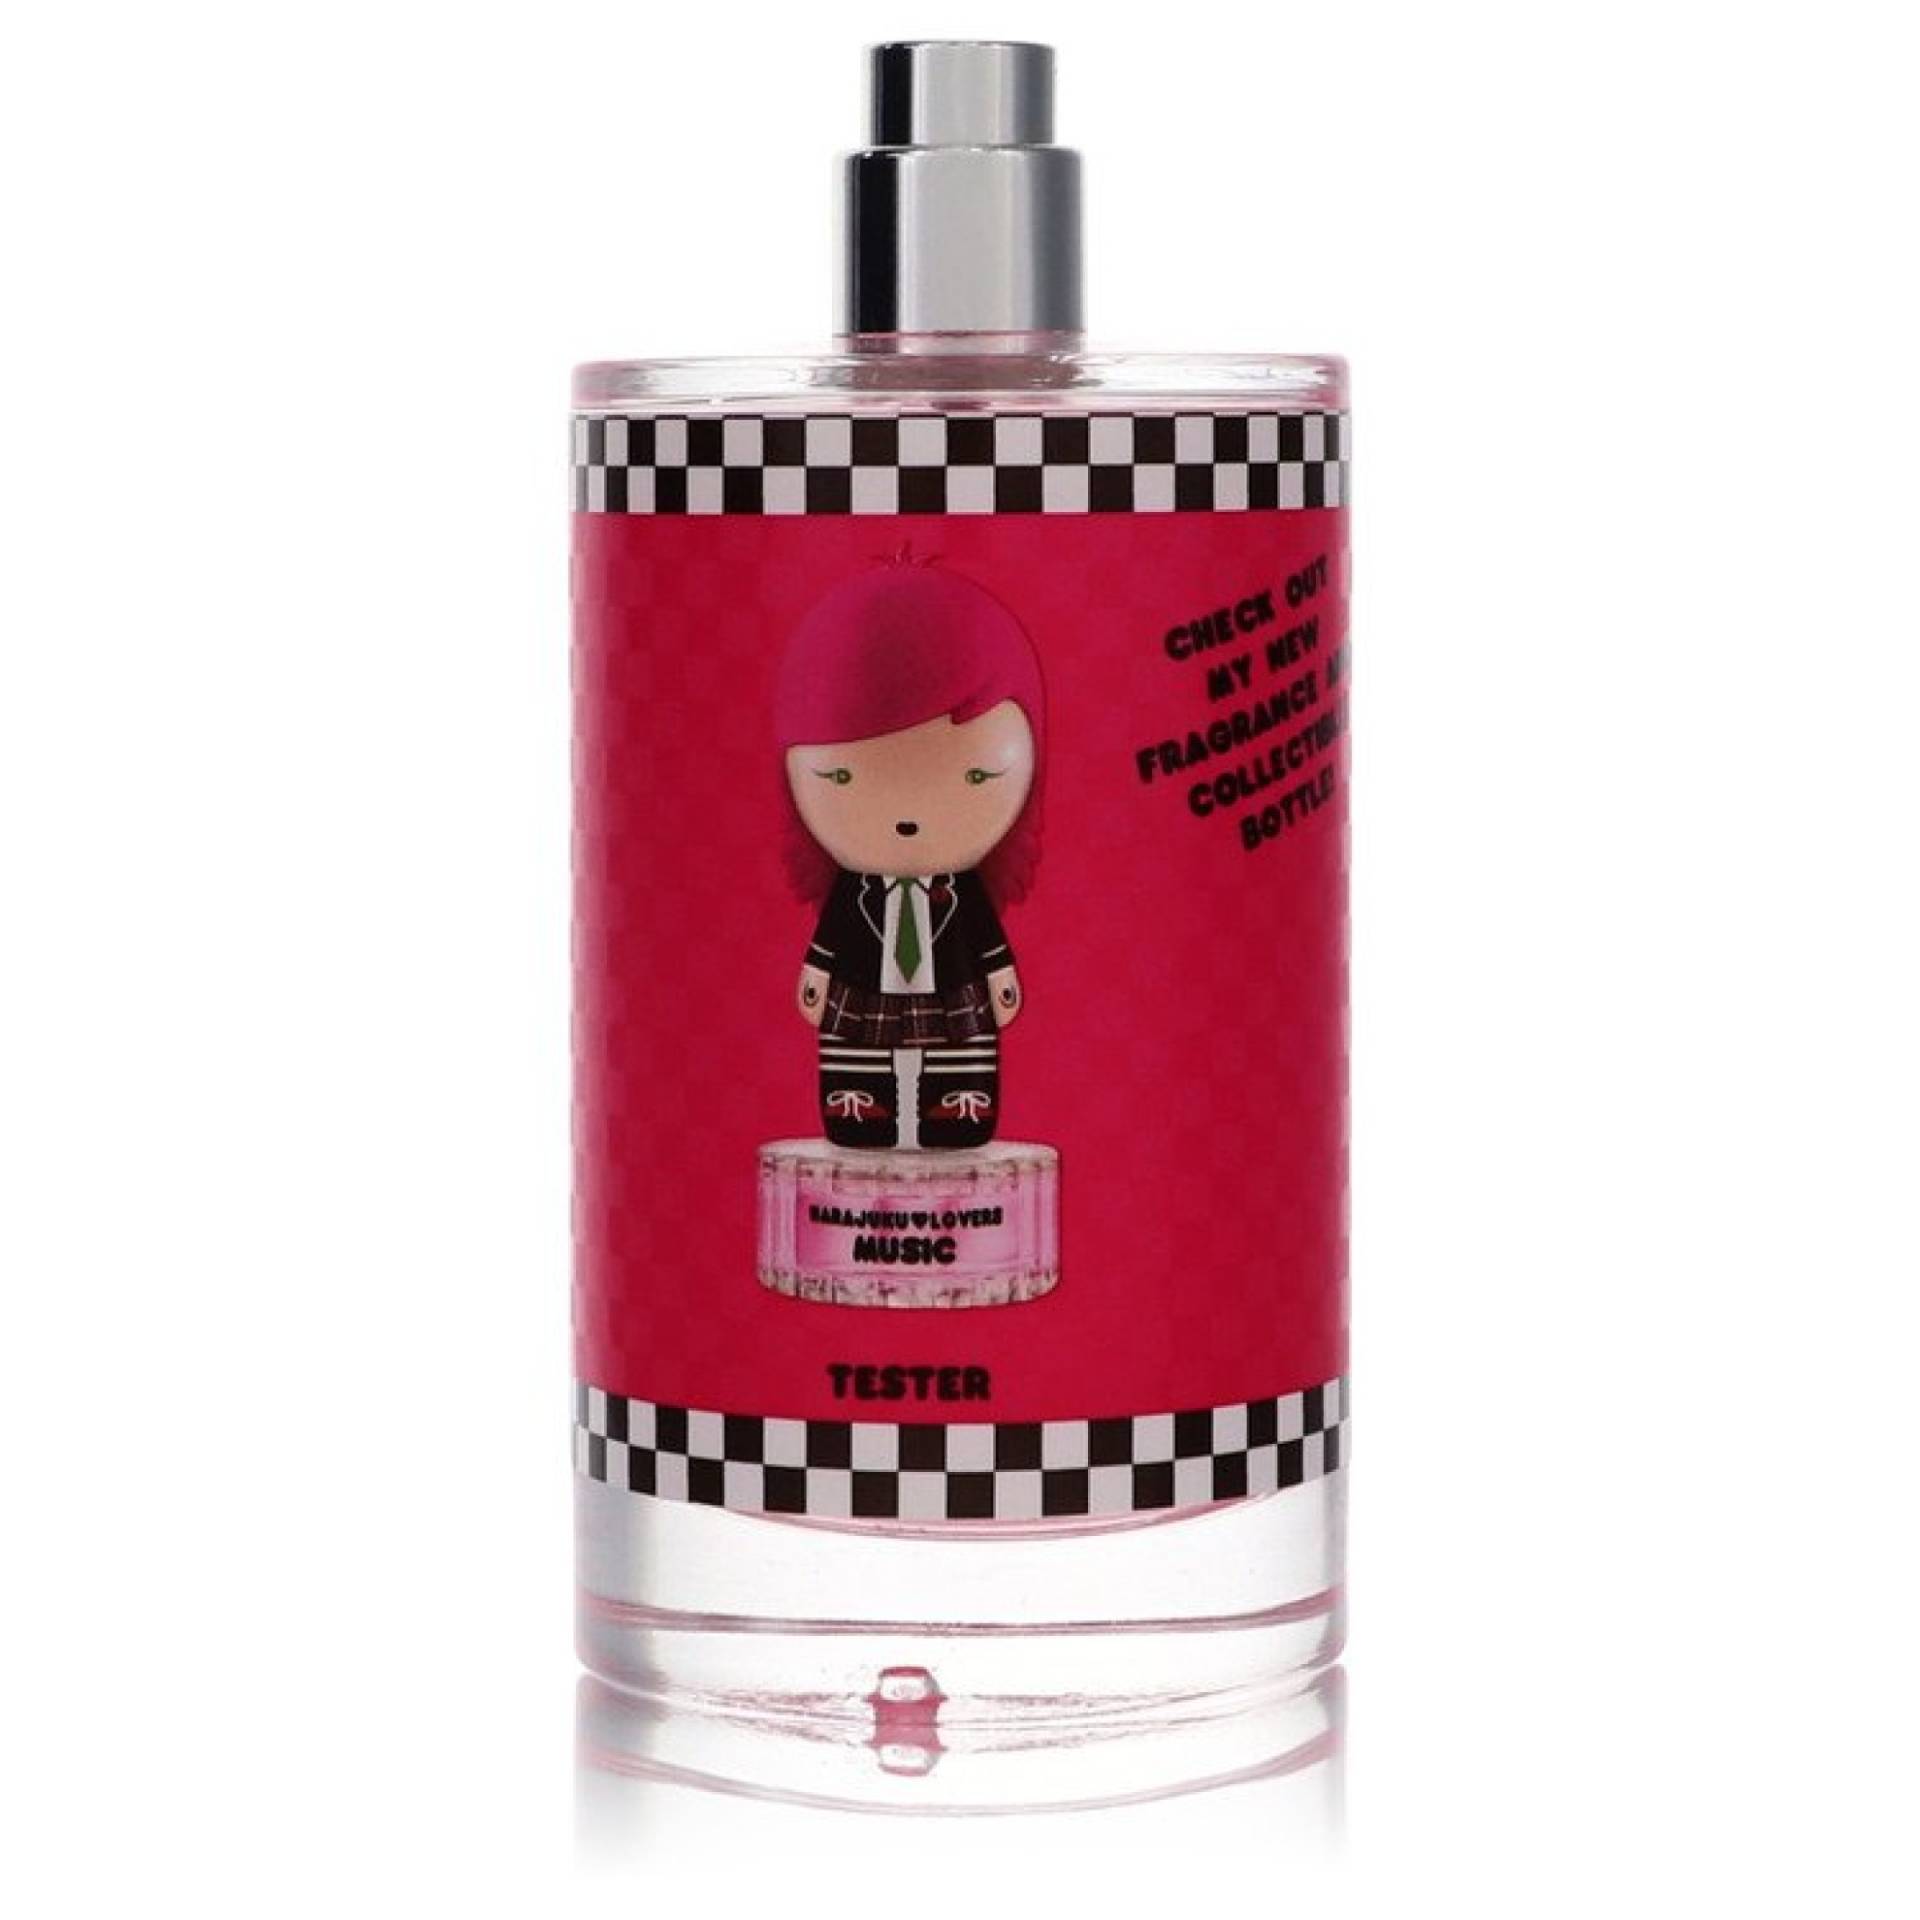 Gwen Stefani Harajuku Lovers Wicked Style Music Eau De Toilette Spray (Tester) 100 ml